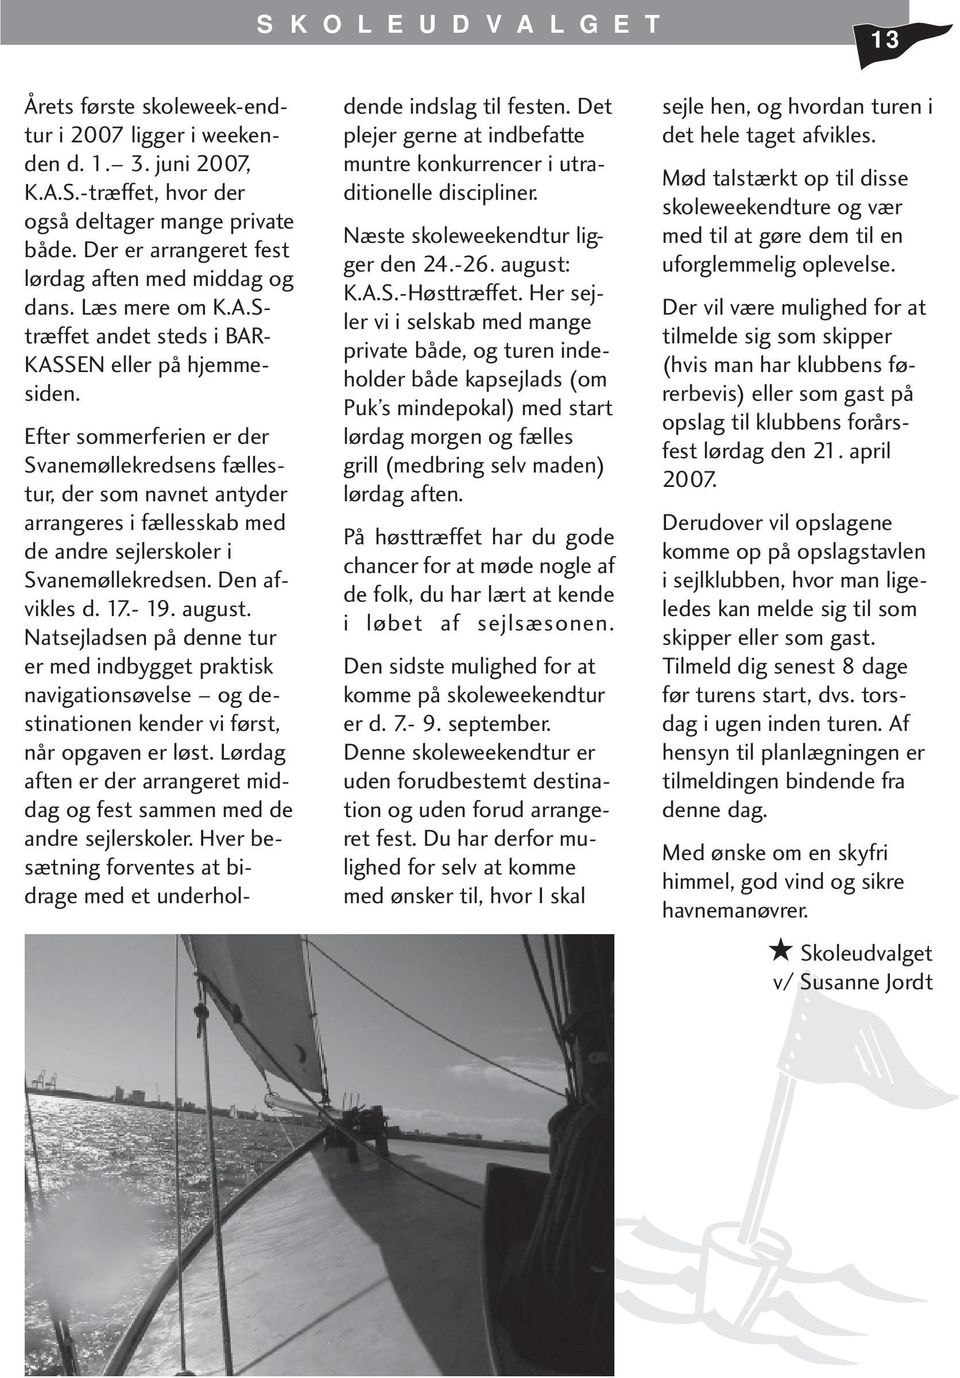 Efter sommerferien er der Svanemøllekredsens fællestur, der som navnet antyder arrangeres i fællesskab med de andre sejlerskoler i Svanemøllekredsen. Den afvikles d. 17.- 19. august.